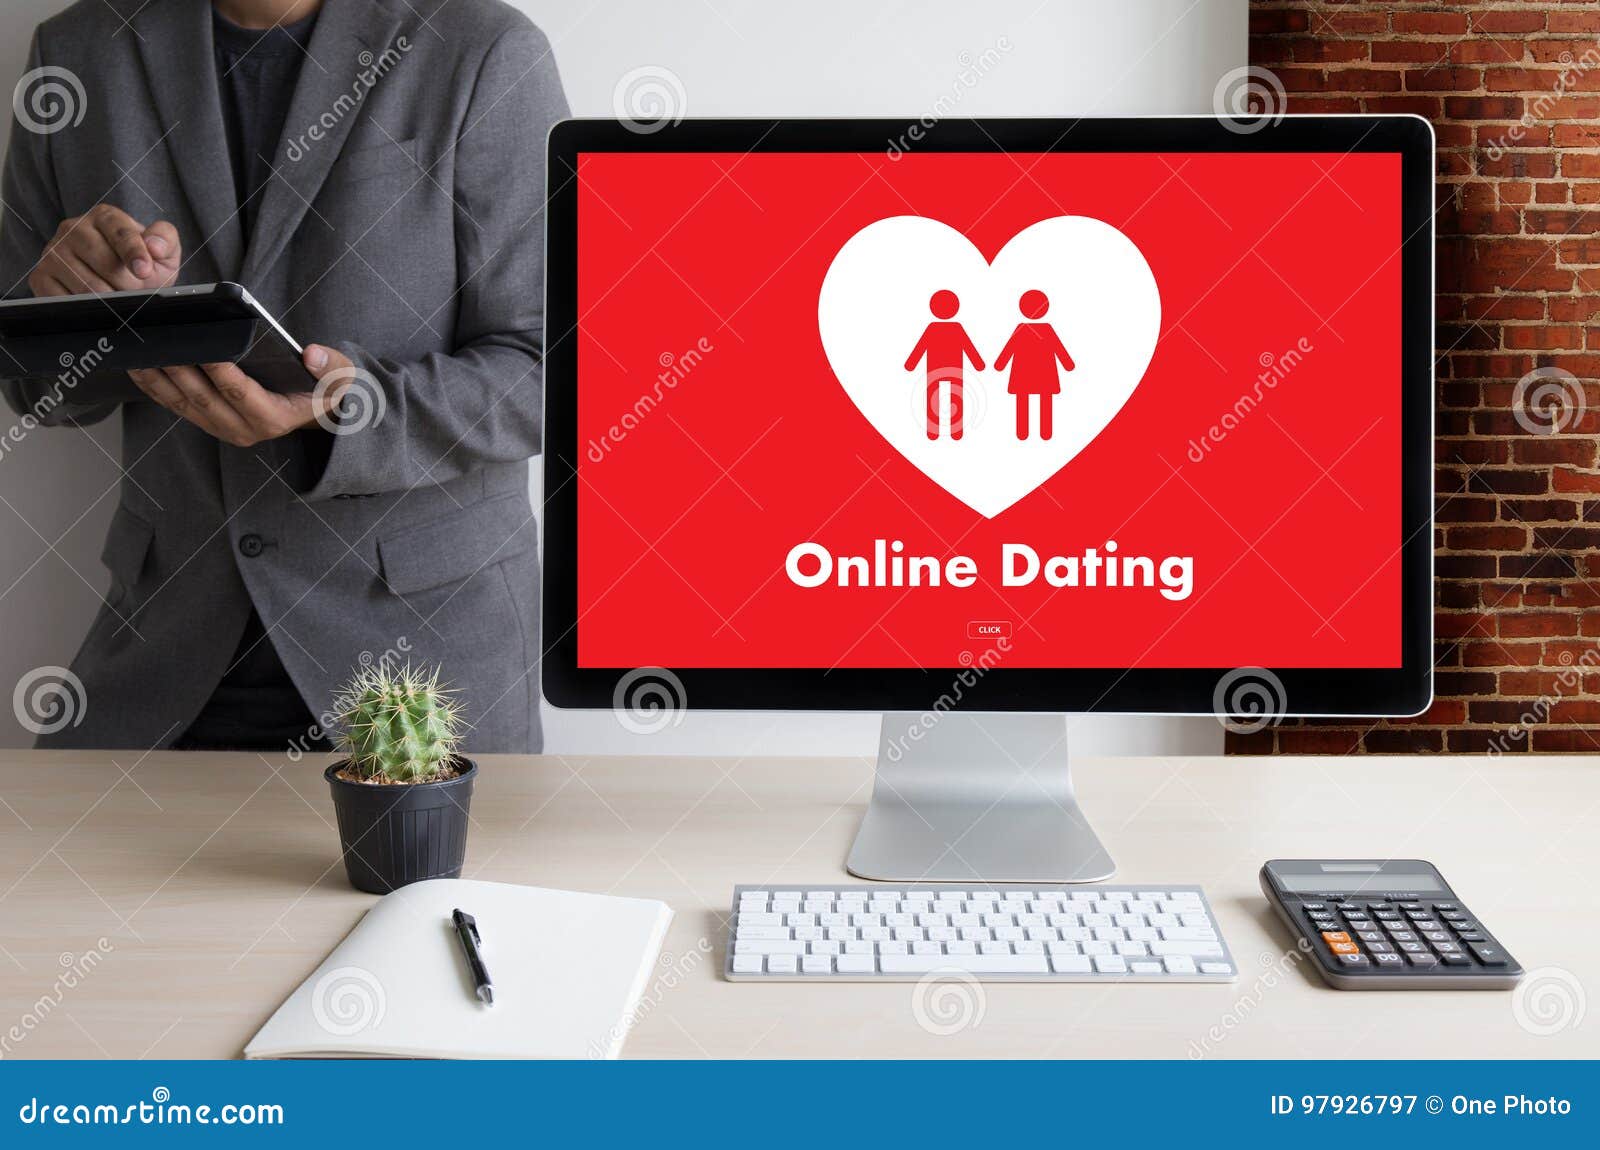 dating online vs matchmaker